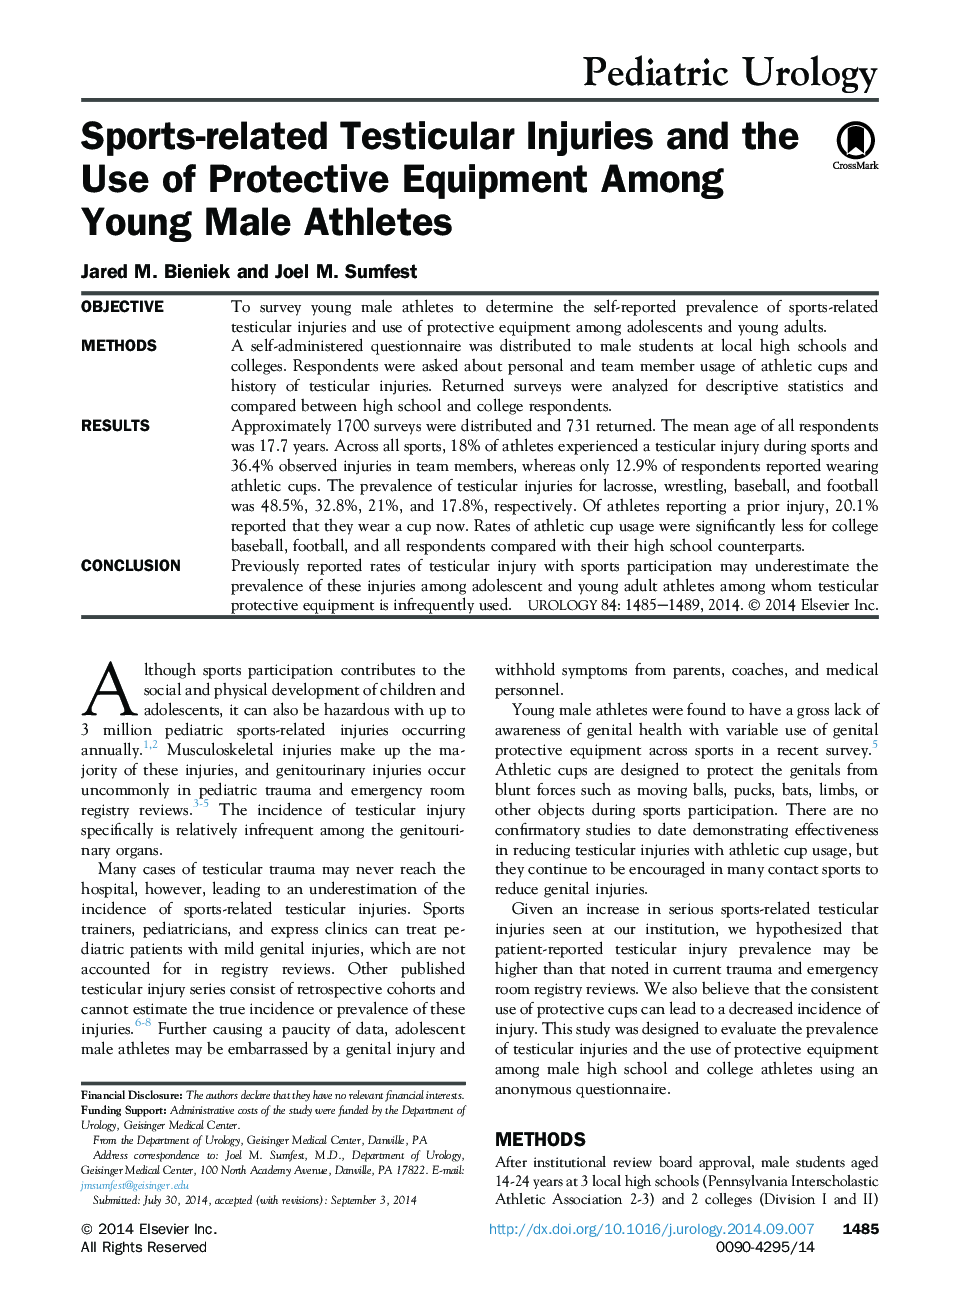 آسیب های مفصلی مرتبط با ورزش و استفاده از تجهیزات حفاظتی در ورزشکاران مرد جوان 